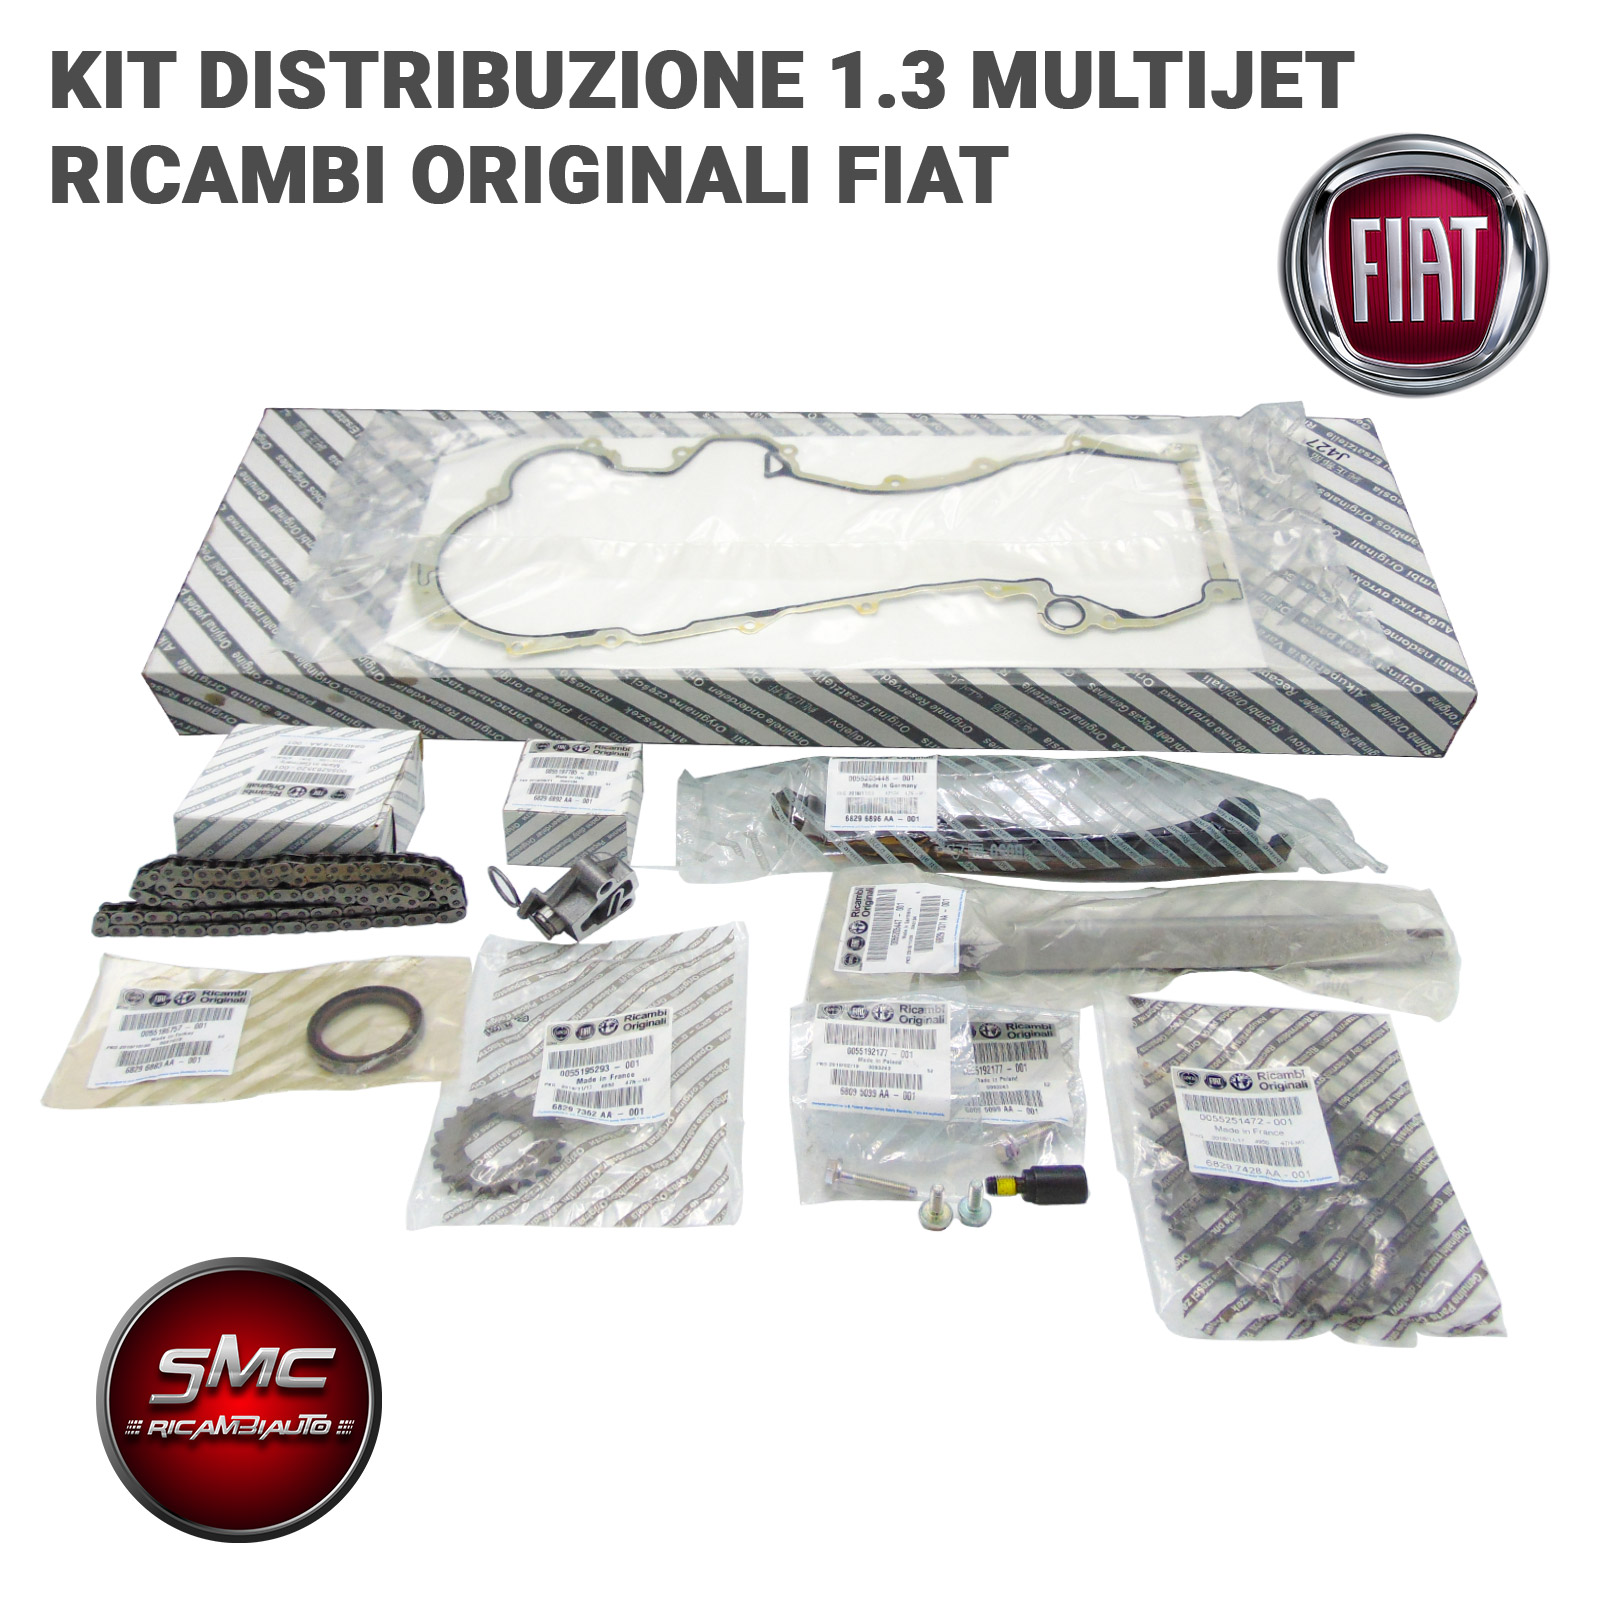 Kit Catena Distribuzione rinforzato Fiat 1.3 Multijet - Ricambi auto SMC